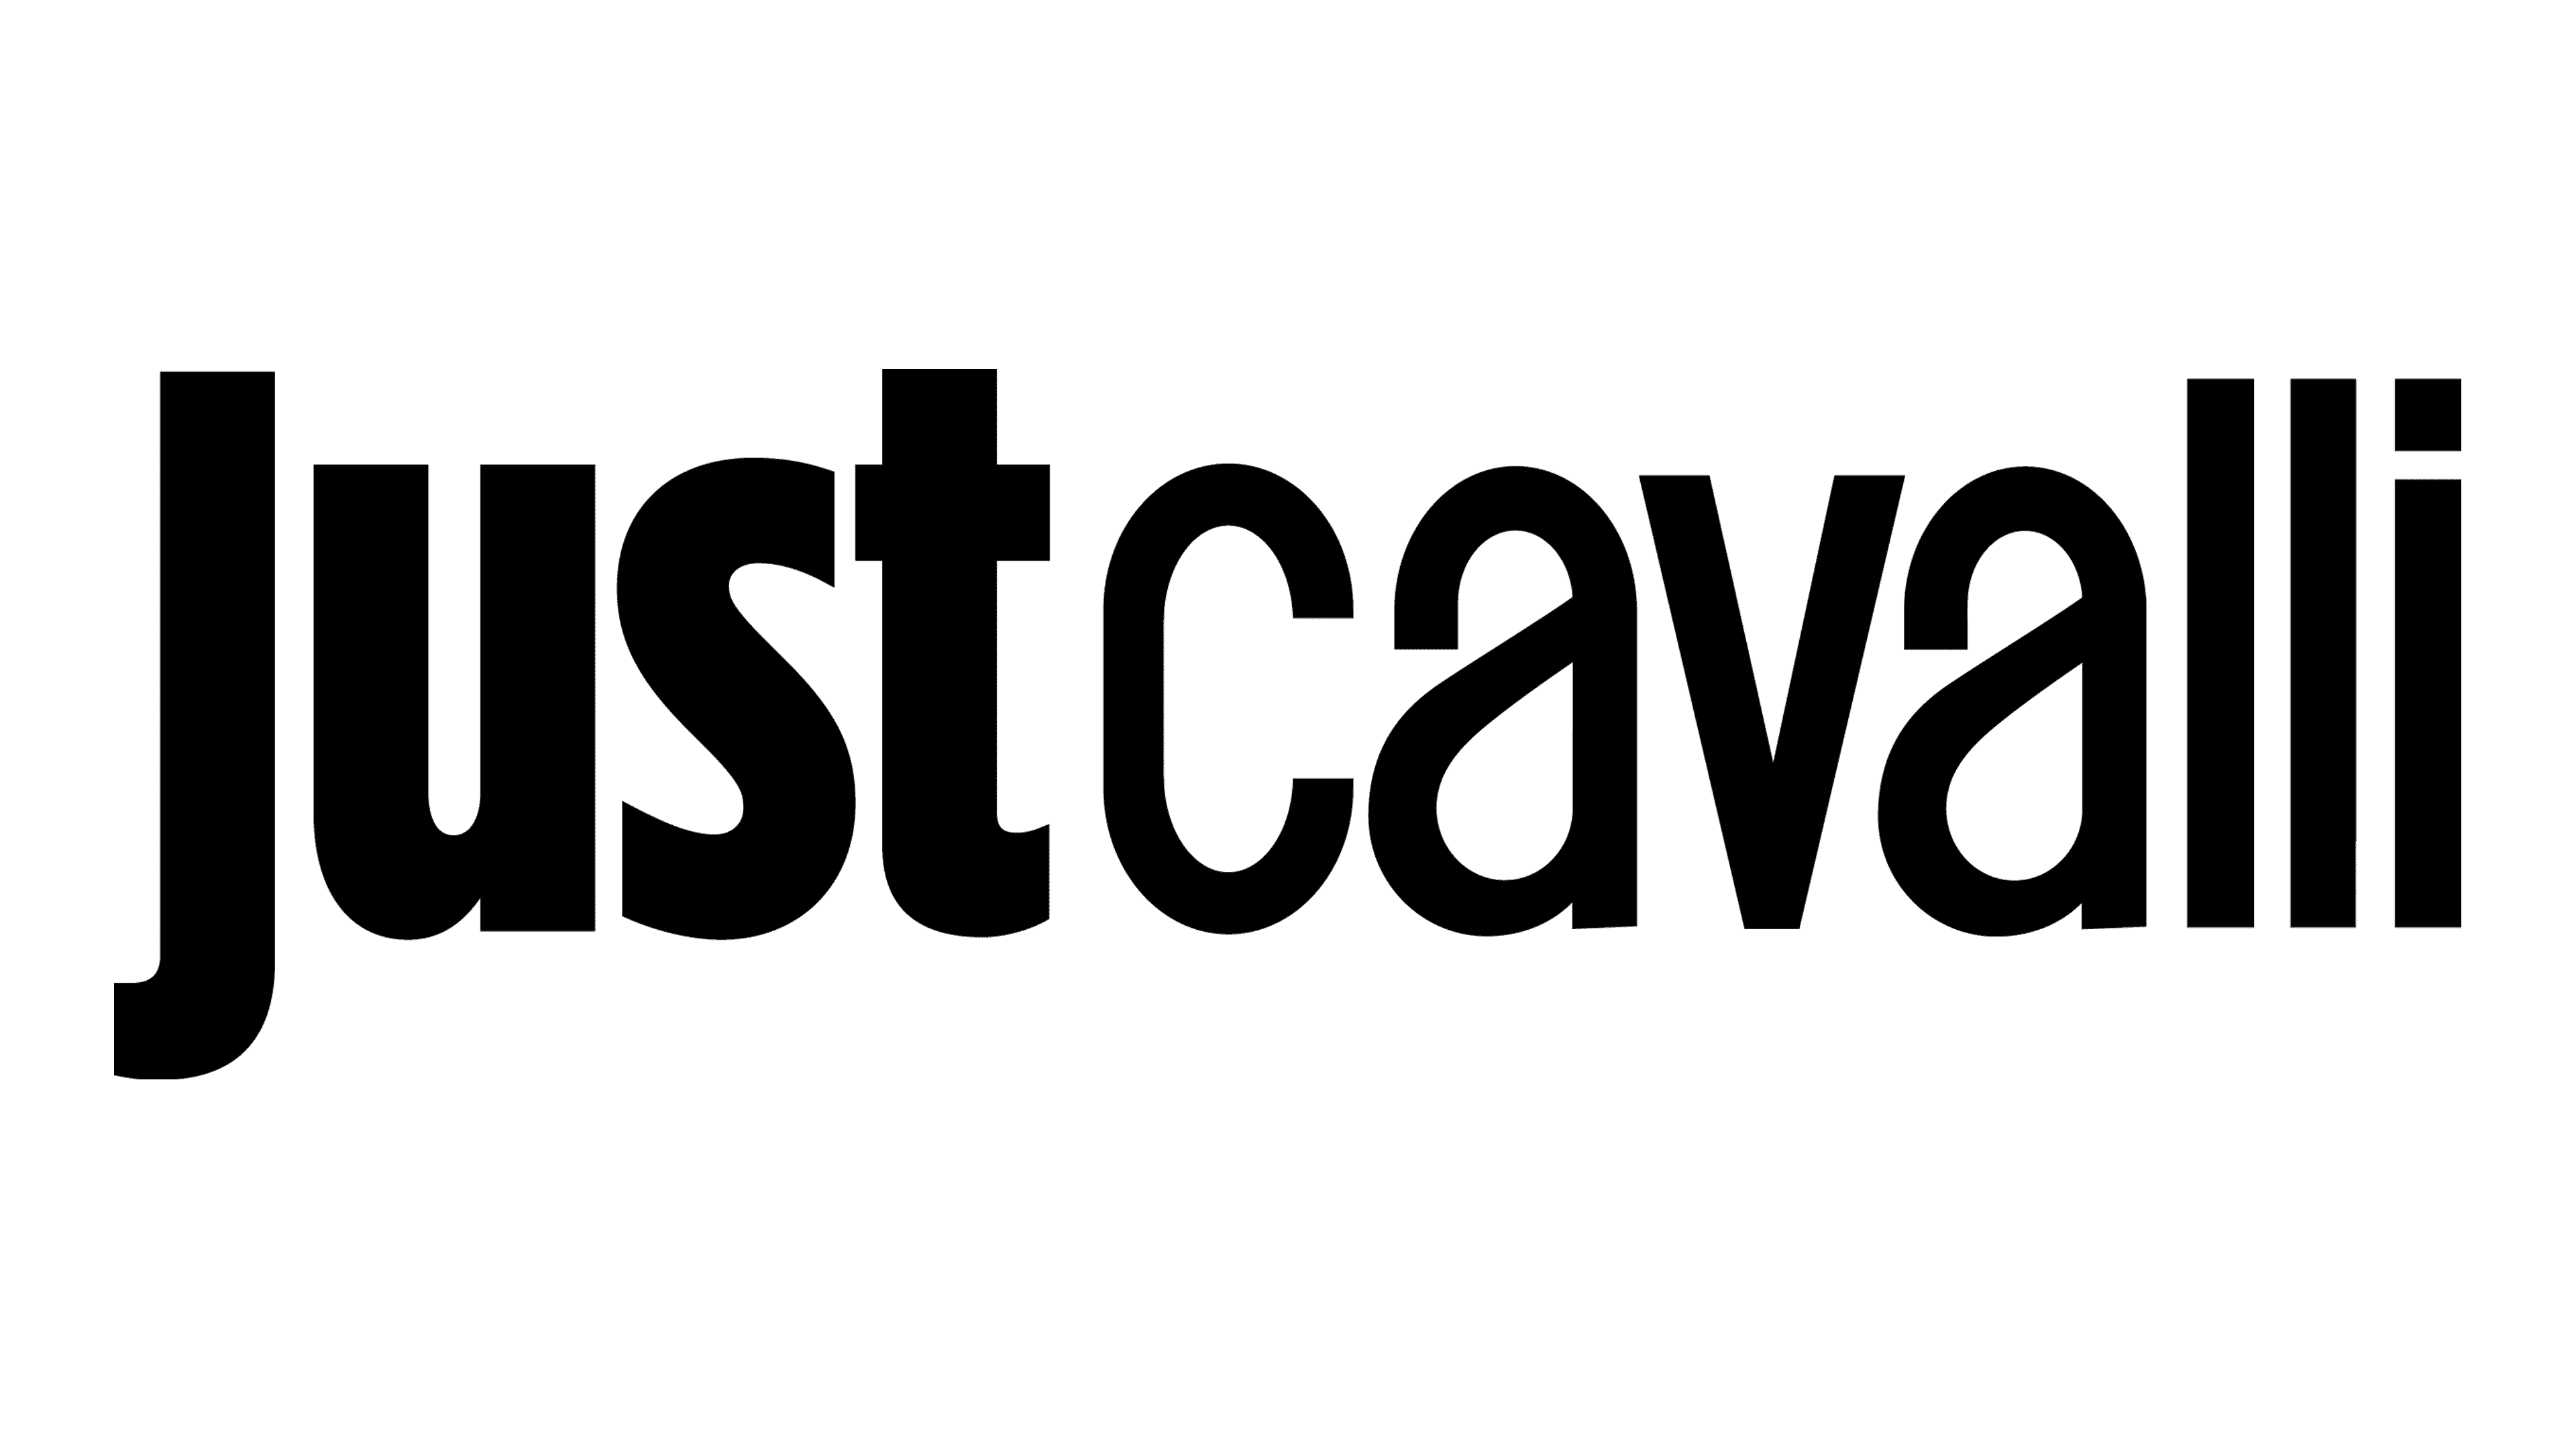 Just-Cavalli-logo